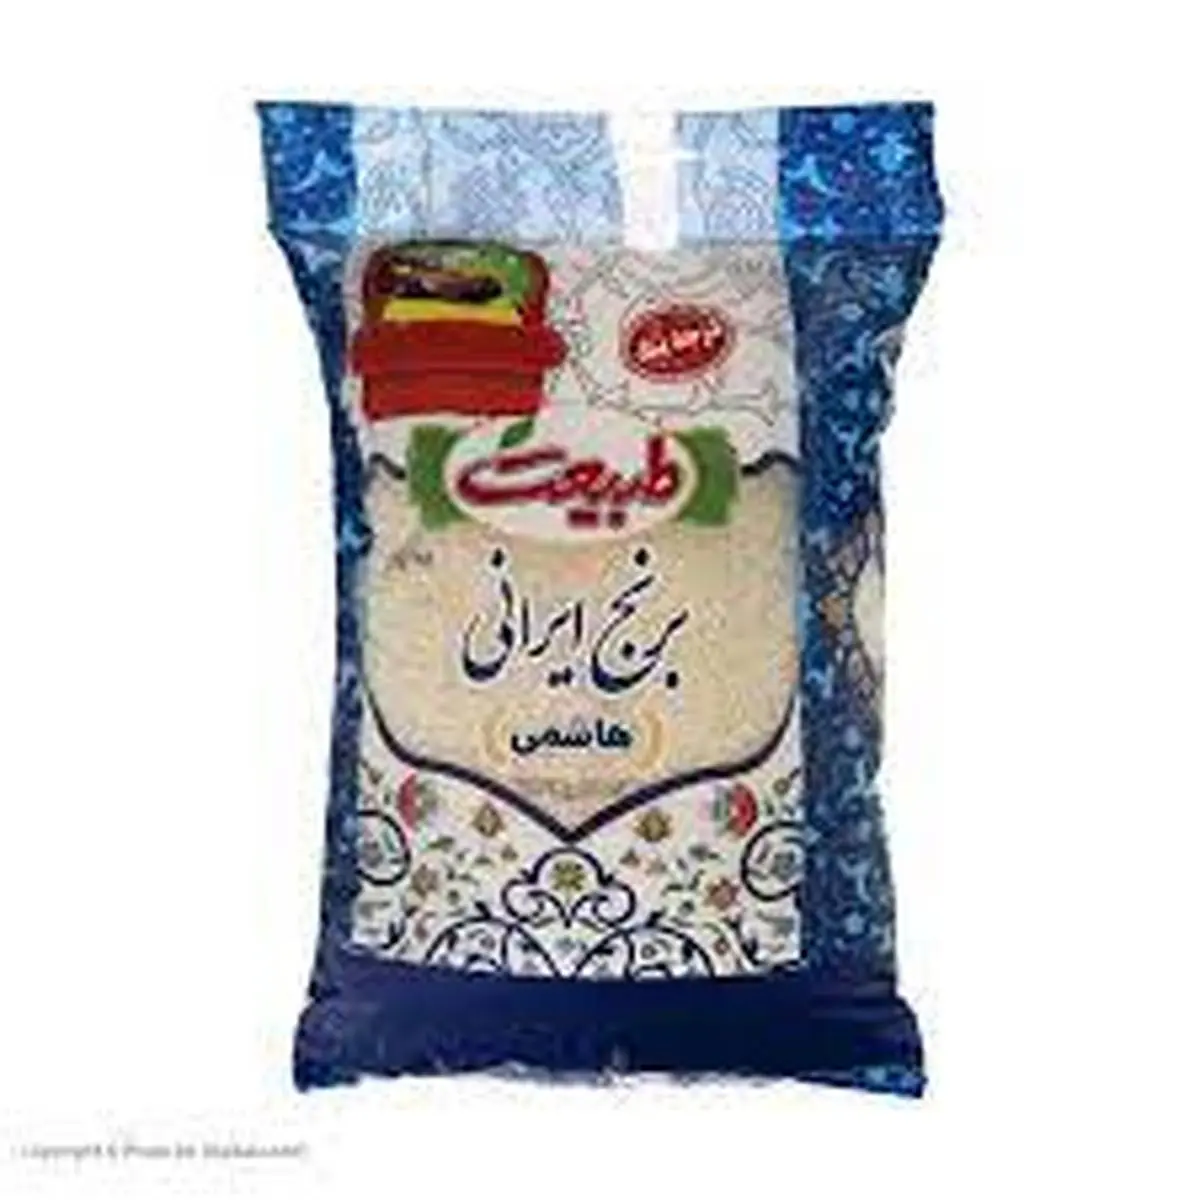 ارزان شدن برنج ایرانی برای شب عید+ جزییات